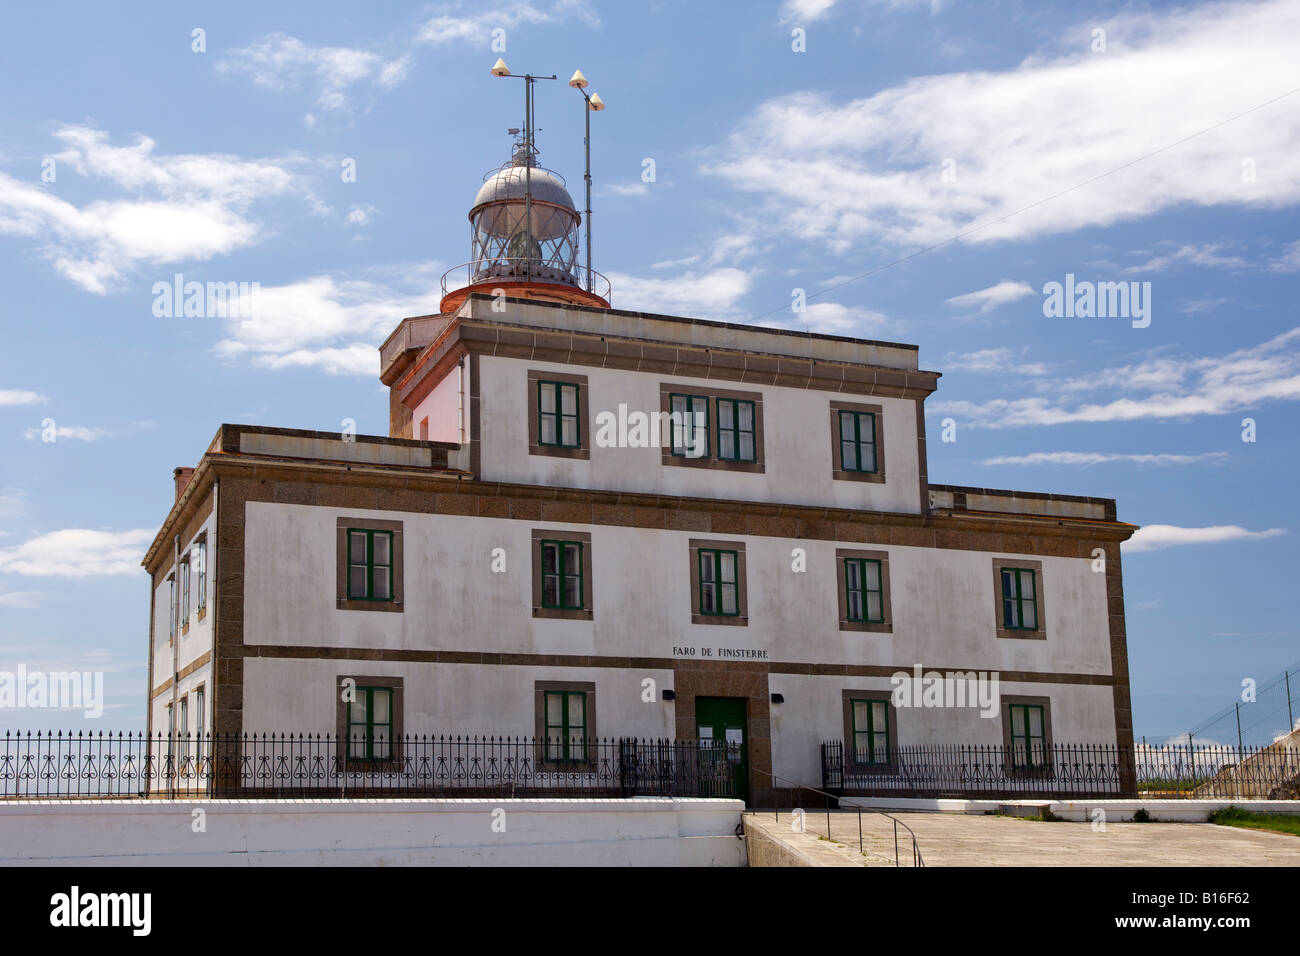 Le phare de Cabo Fisterra Fisterra le long de la côte Atlantique de la province de La Corogne Espagne Galice la région. Banque D'Images